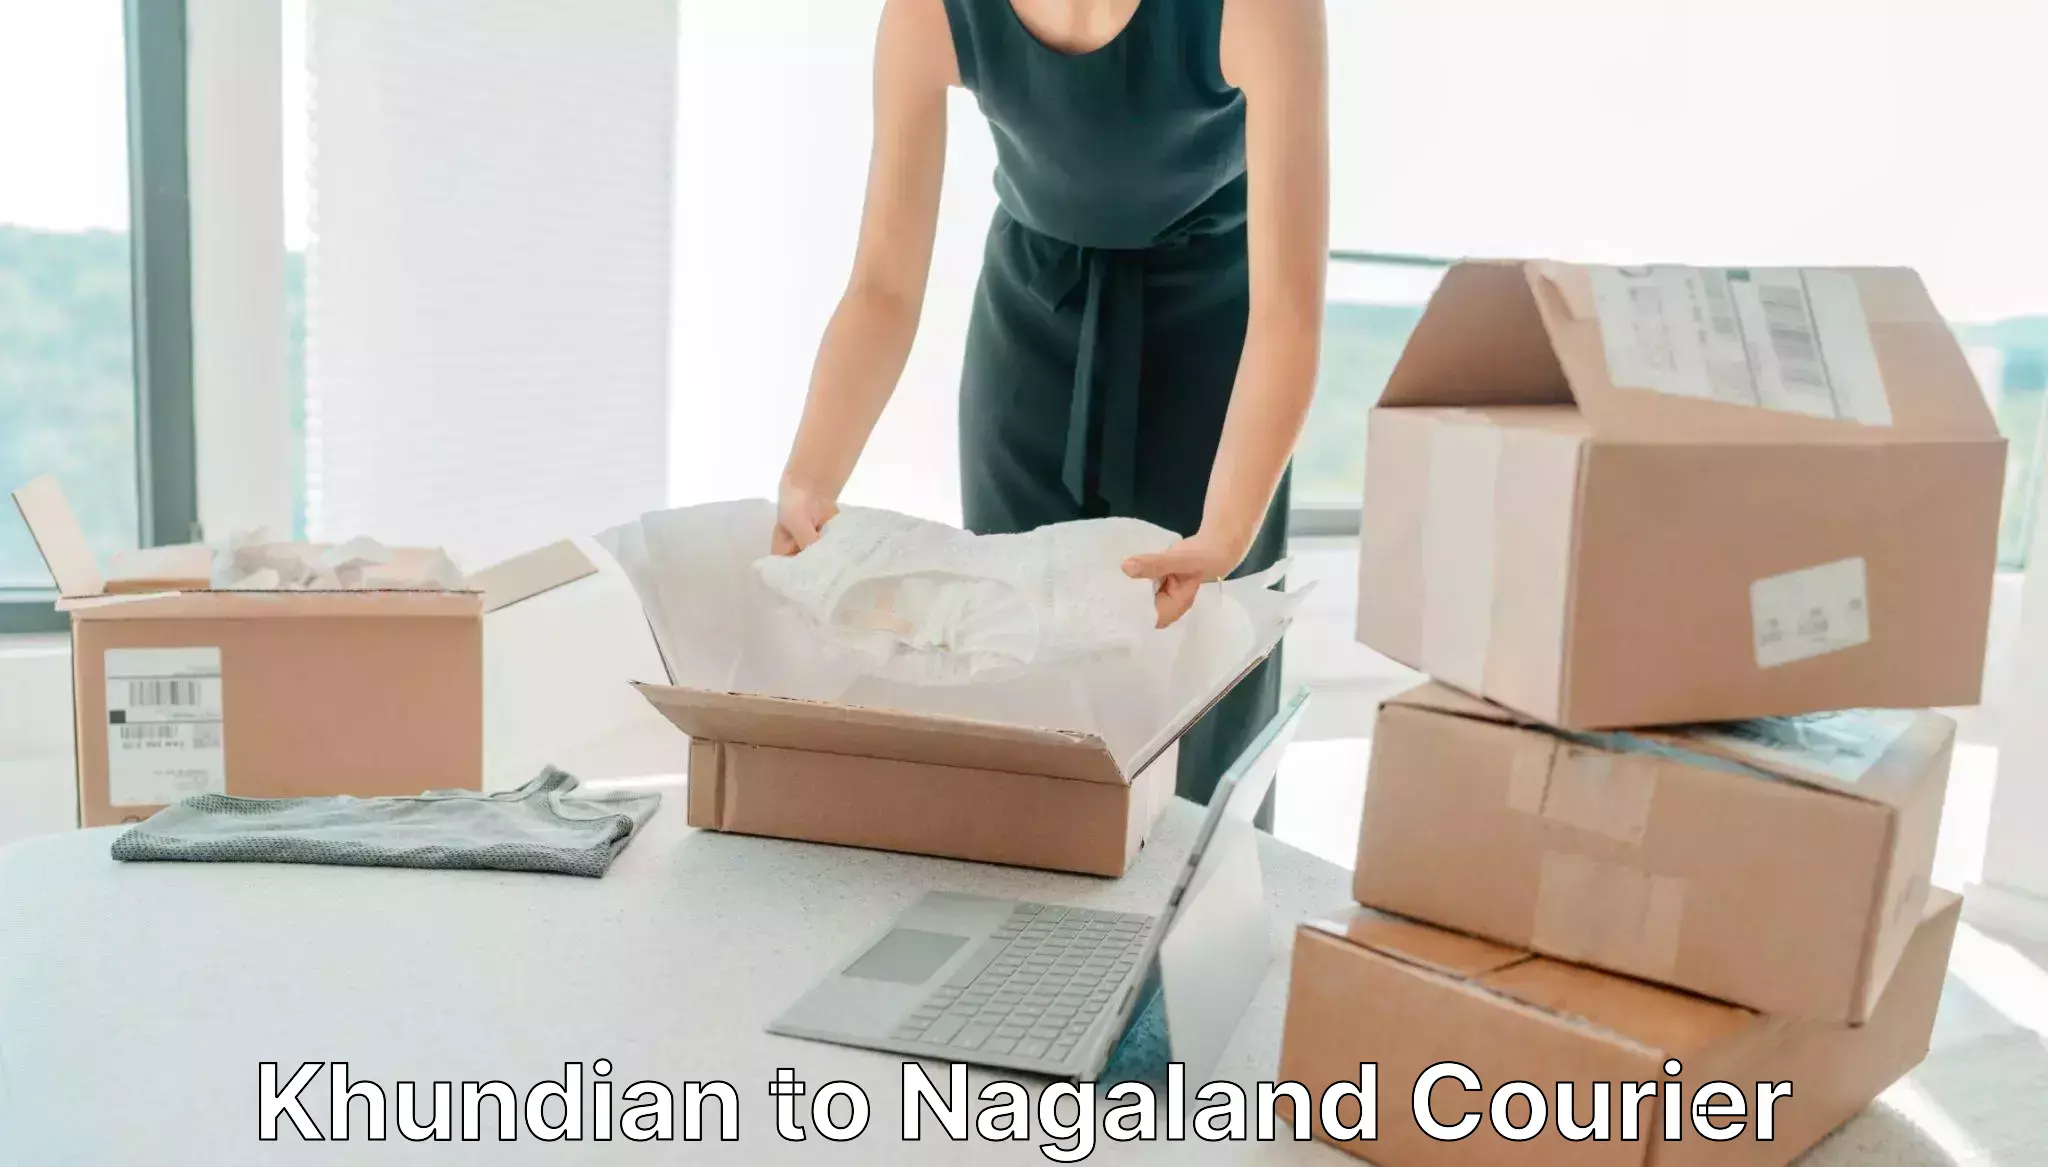 Holiday shipping services Khundian to NIT Nagaland